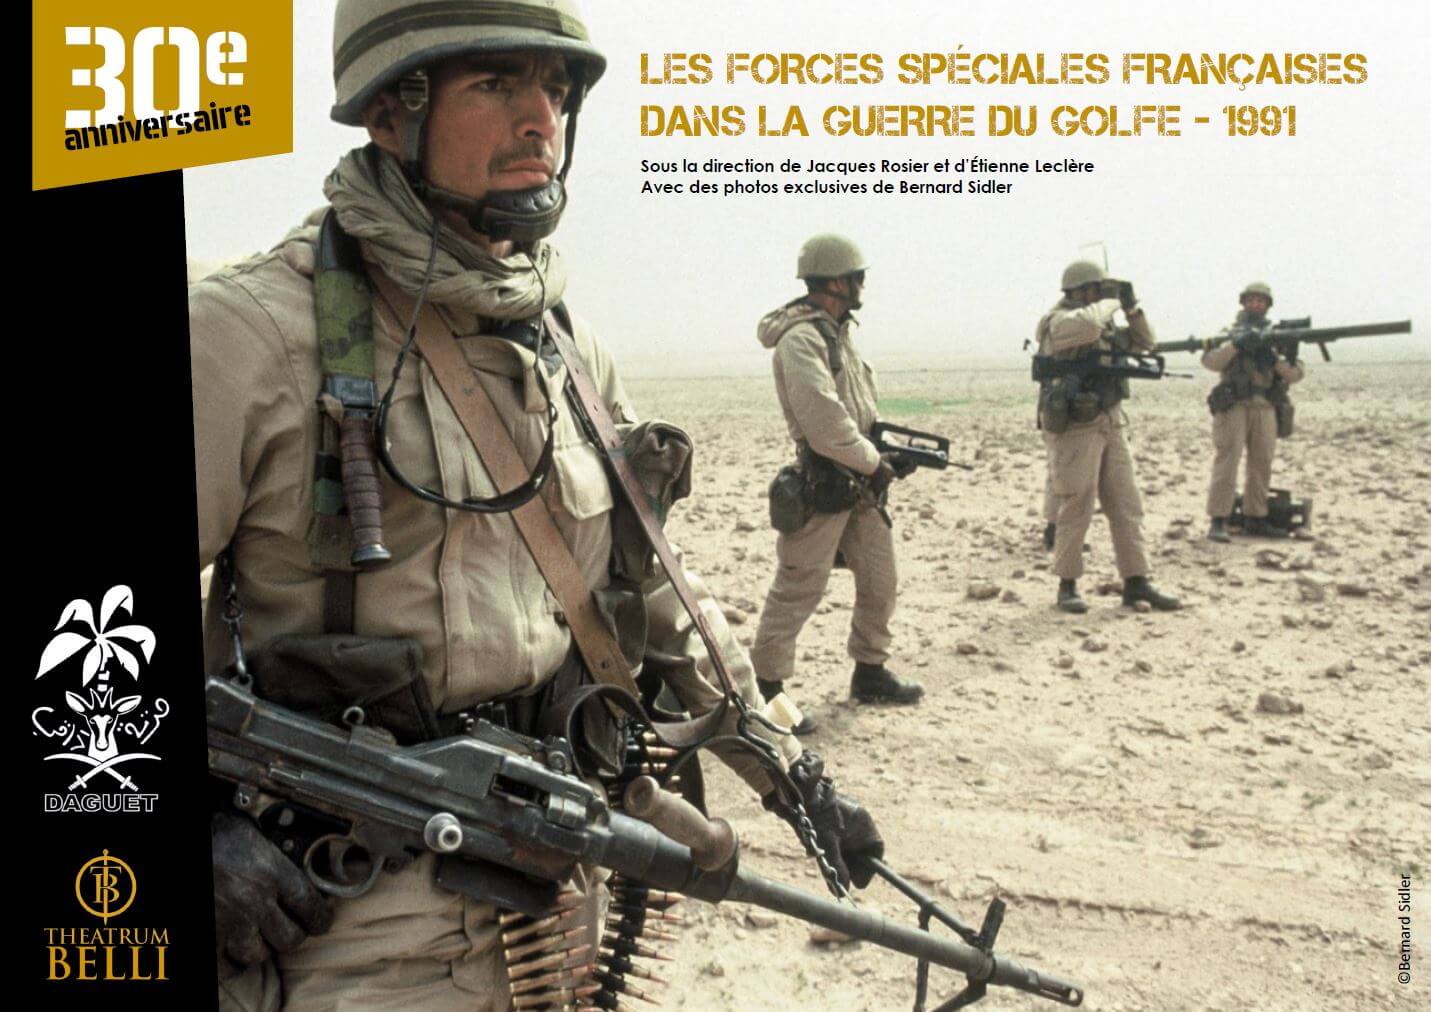 Les forces spéciales françaises dans la guerre du Golfe - 1991 — Theatrum  Belli